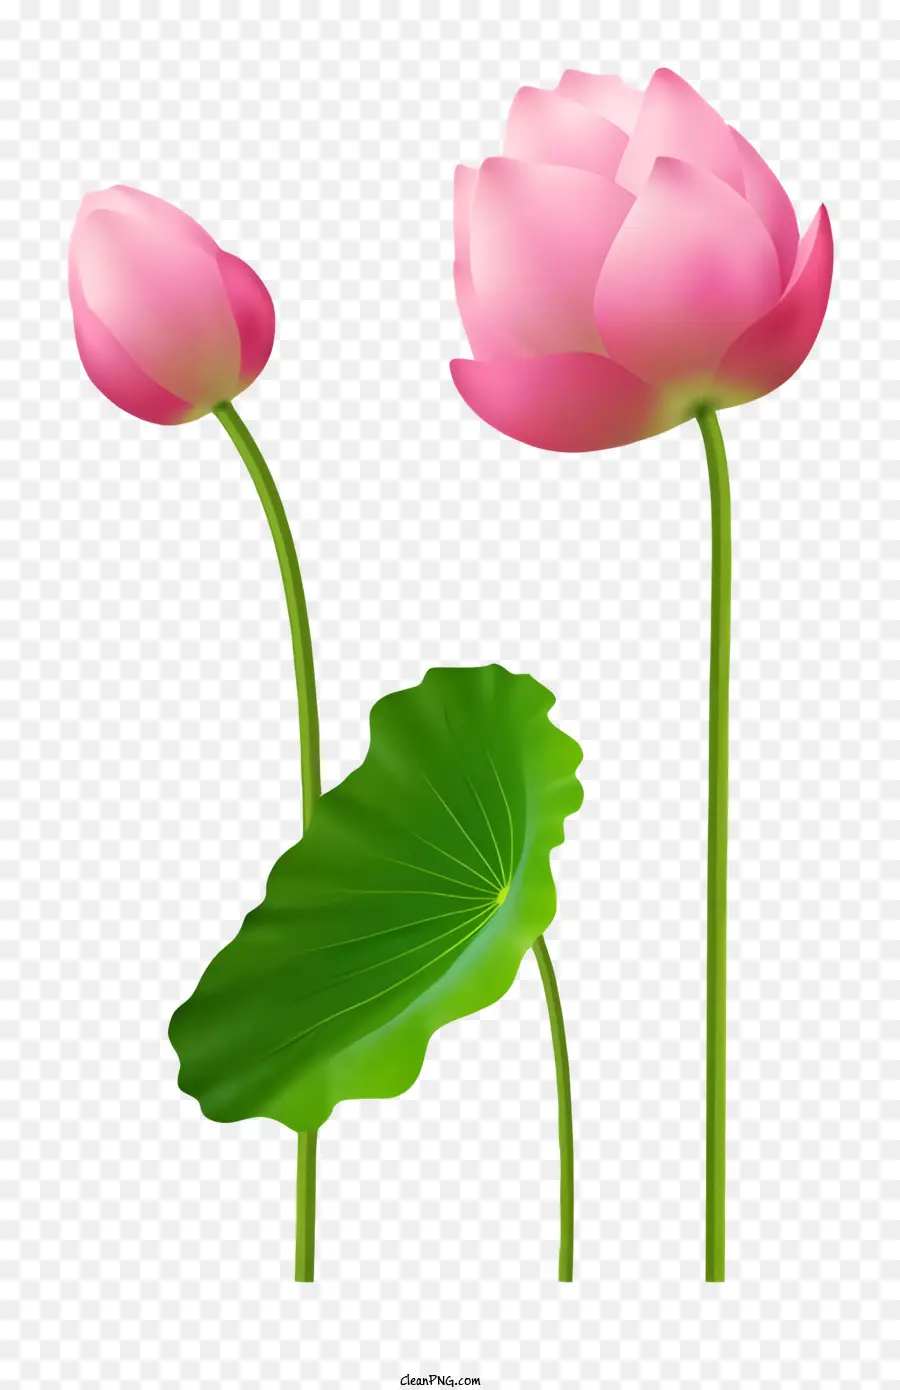 Hoa đẹp - Ba bông hoa sen màu hồng với lá xanh